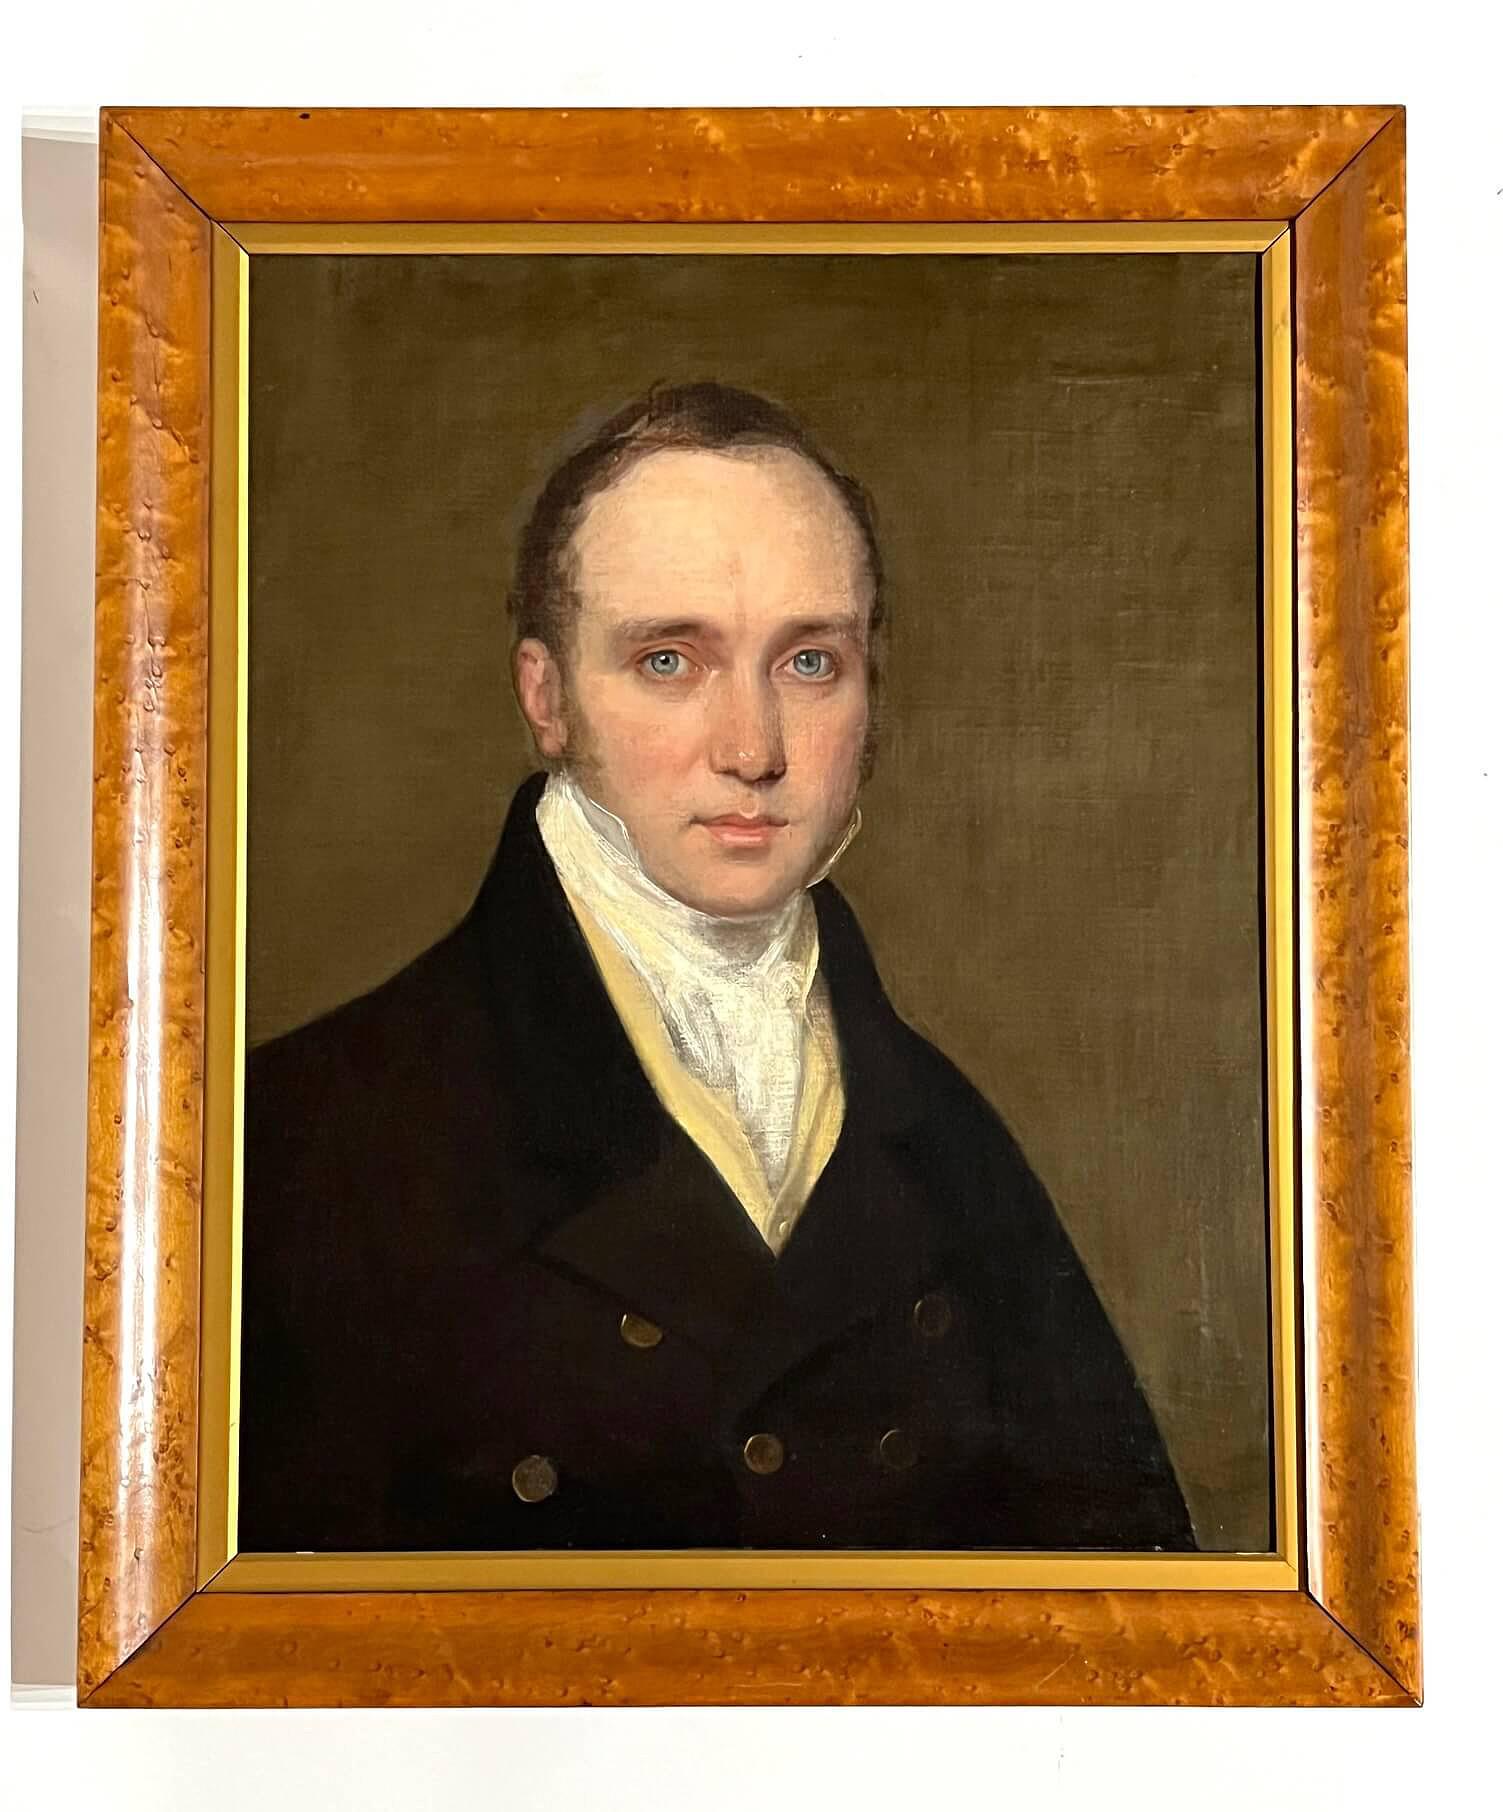 Un exquis portrait d'époque Regency vers 1820 à la manière du portraitiste royal écossais Sir Henry Raeburn (4 mars 1756 - 8 juillet 1823) d'un beau jeune homme aux yeux bleus glacés perçants portant un cravate blanche, un col haut, un gilet jaune